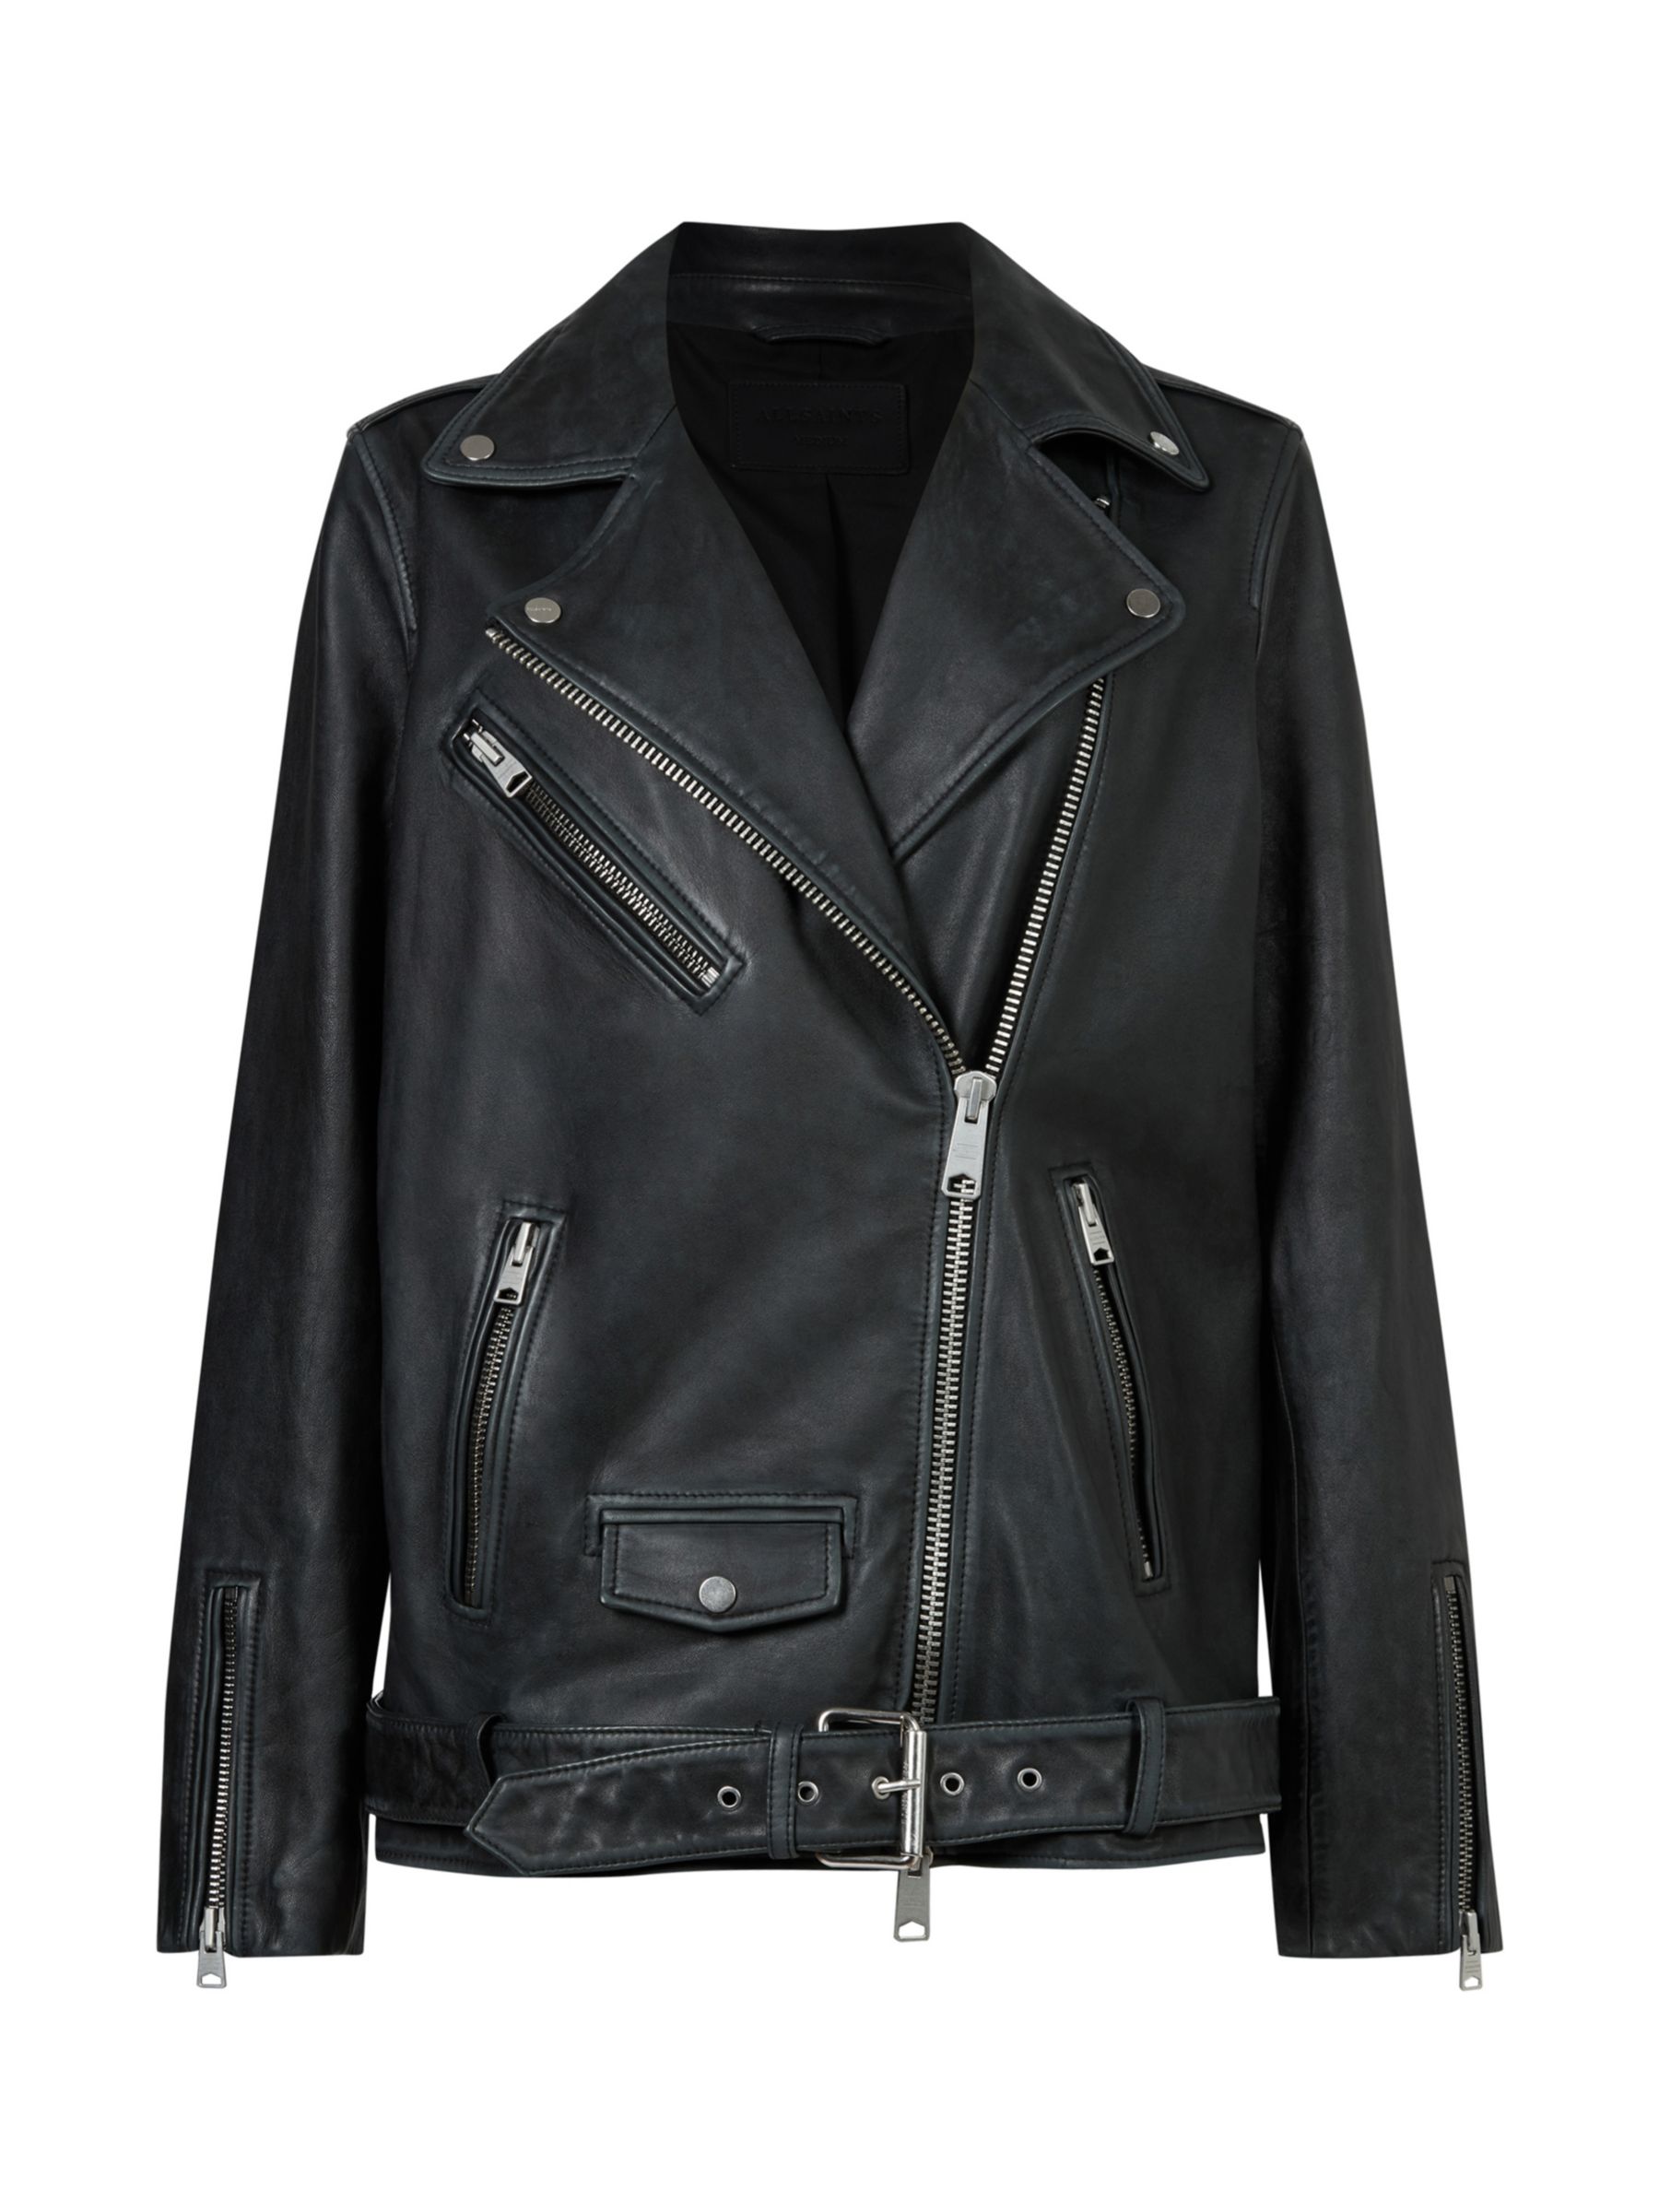 Buy AllSaints Billie Leather Biker Jacket Online at johnlewis.com